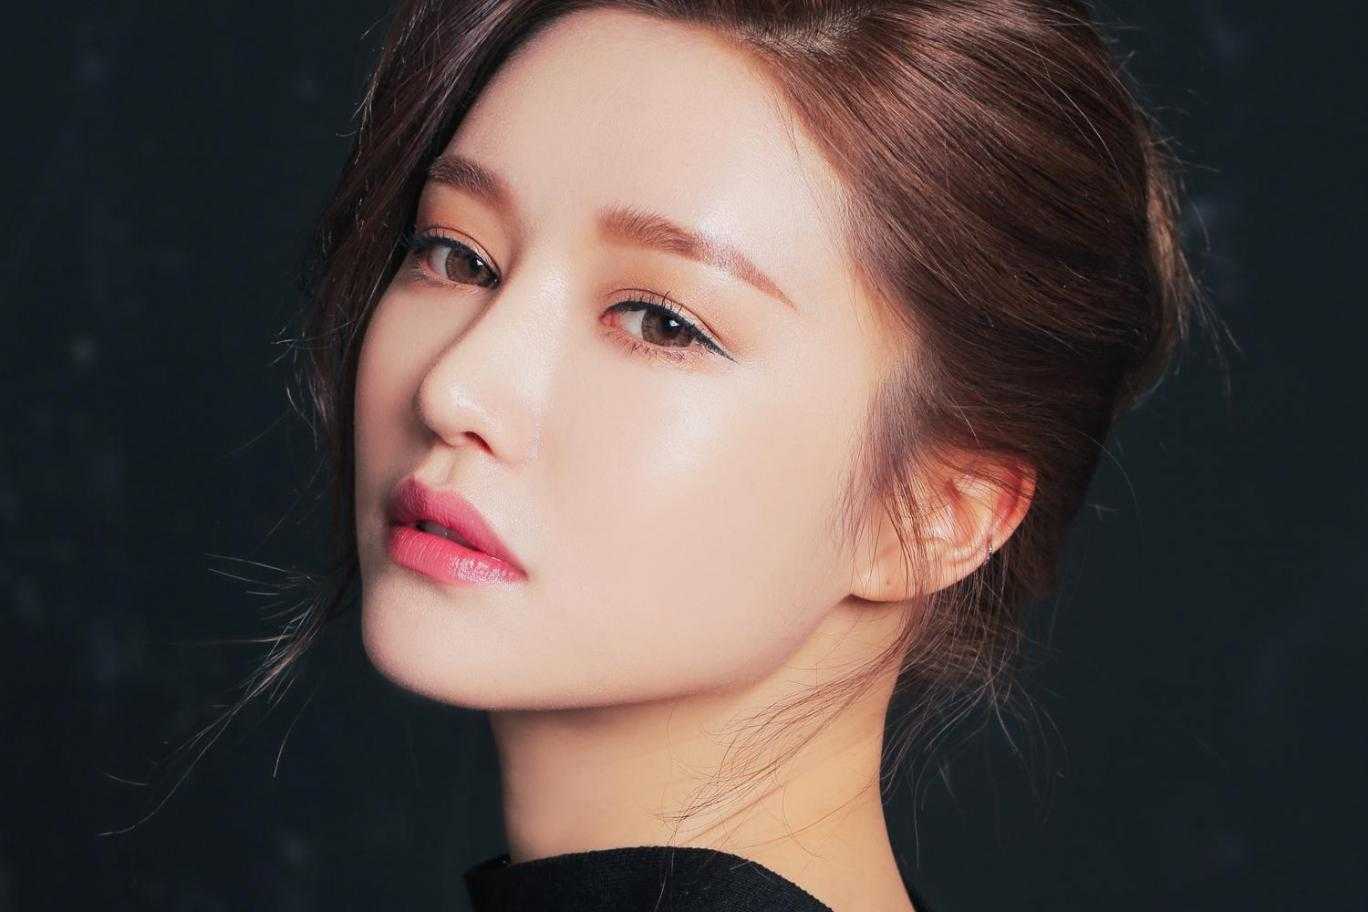 Как правильно сделать простой корейский макияж дома? » корейская косметика - все о косметике из кореи: бренды, отзывы, описания